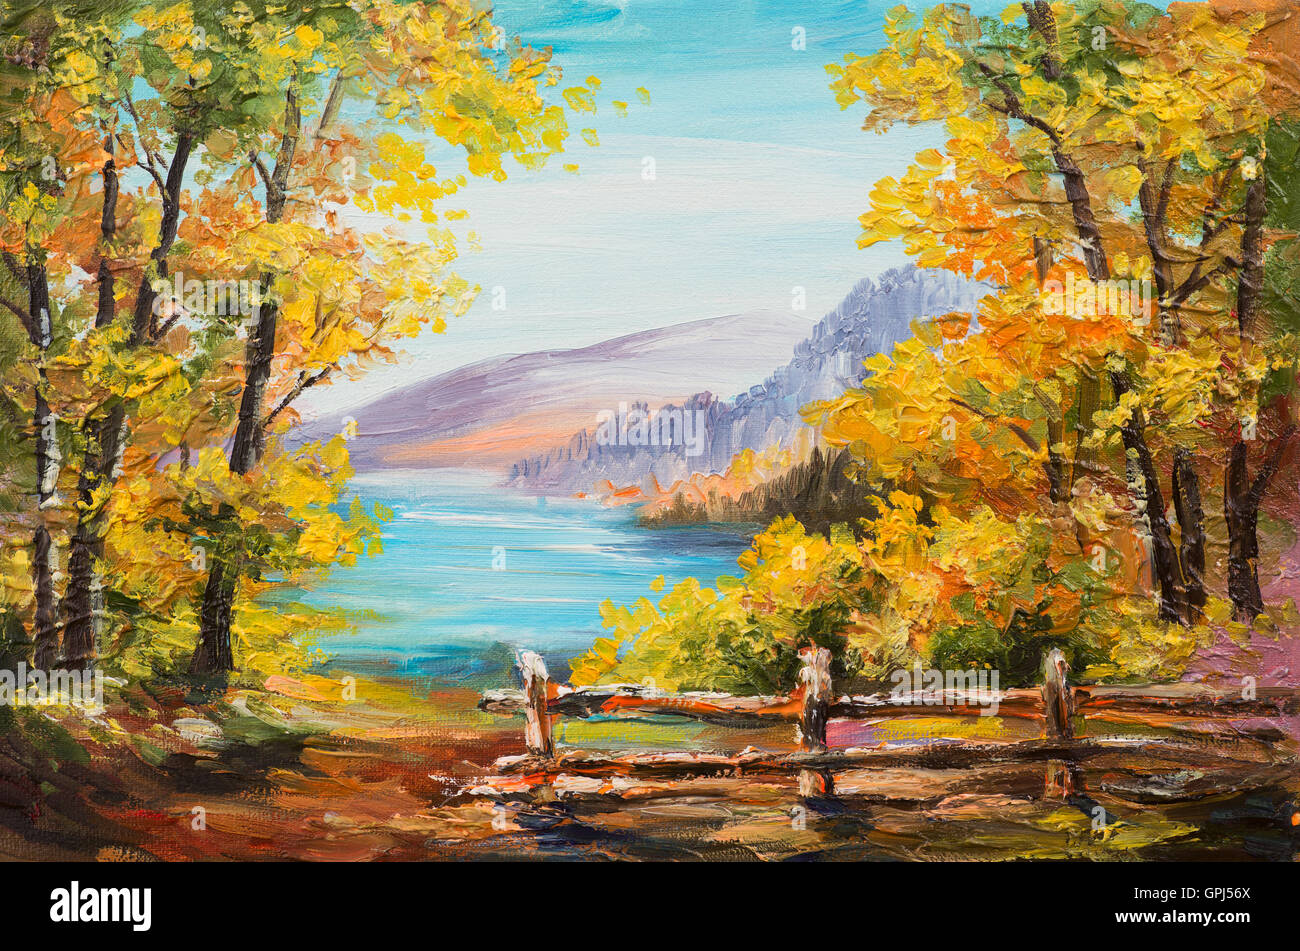 Peinture à l'huile paysage - forêt d'Automne, lac de montagne, de l'Impressionnisme Banque D'Images